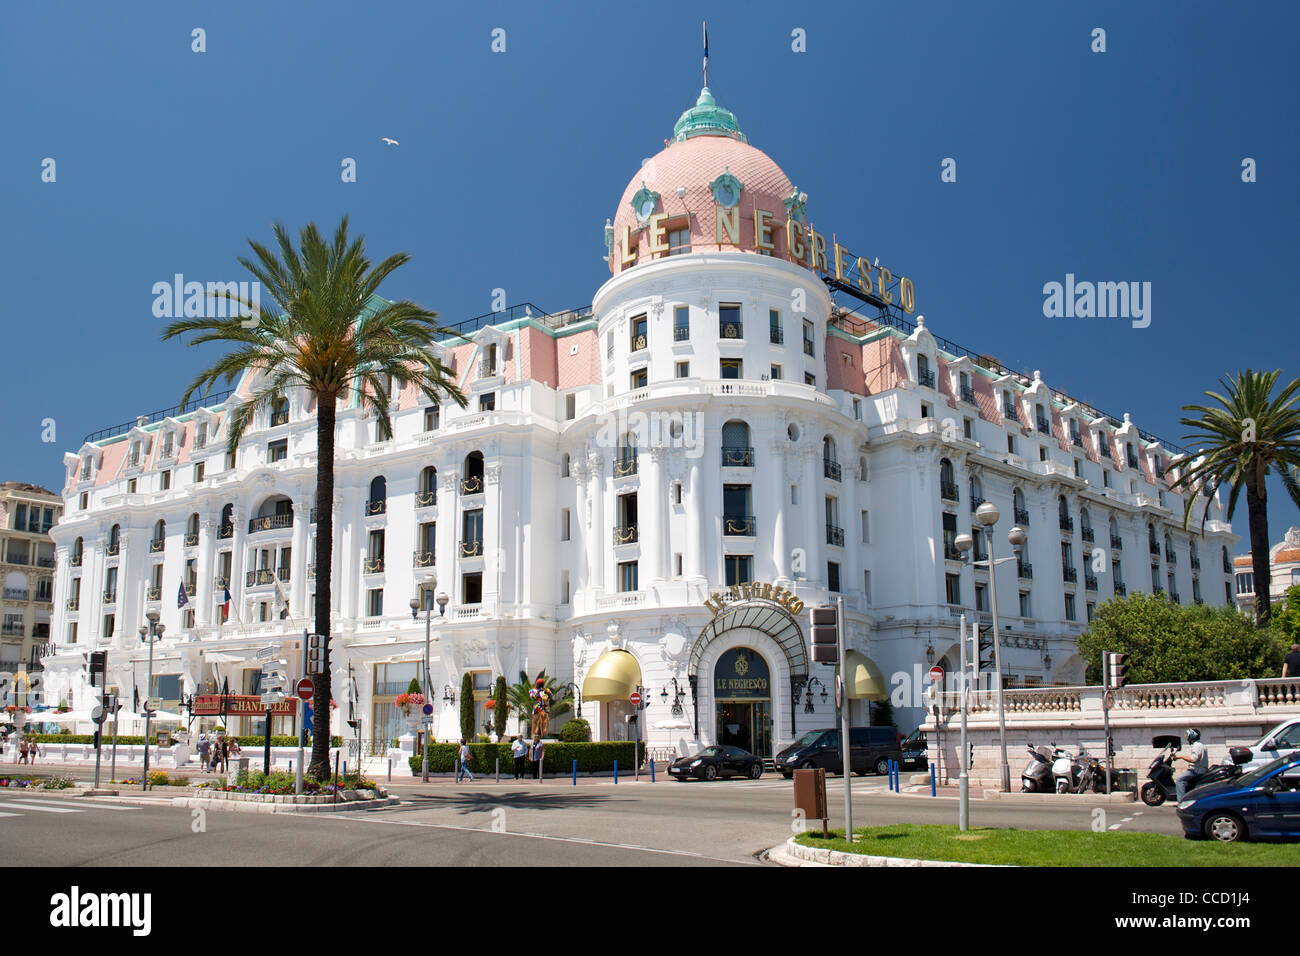 L'hôtel Negresco à Nice, sur la côte méditerranéenne dans le sud de la France. Banque D'Images